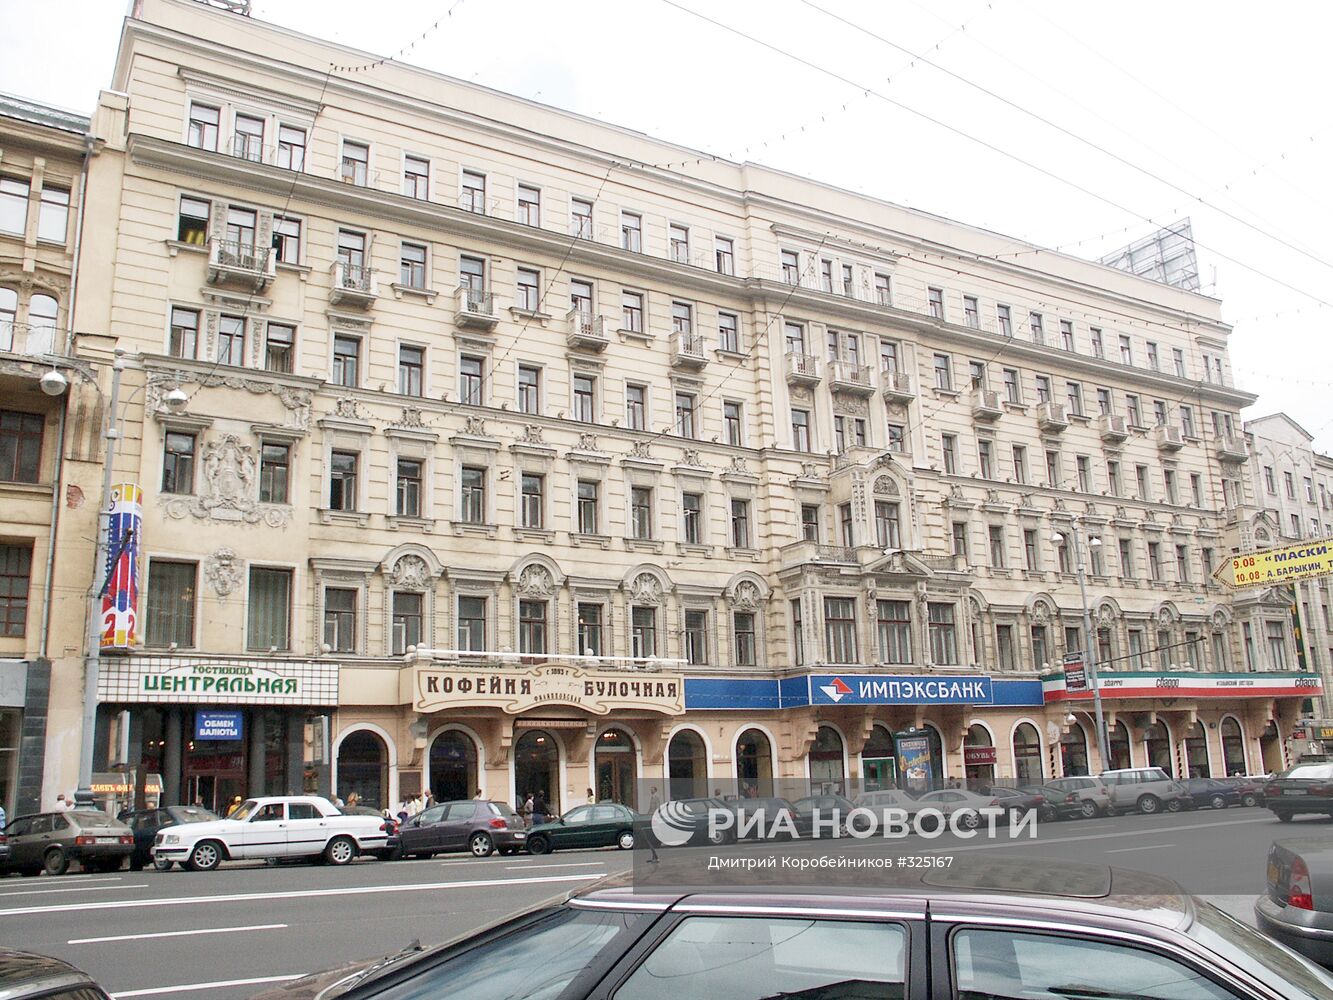 Гостиница "Центральная" в Москве